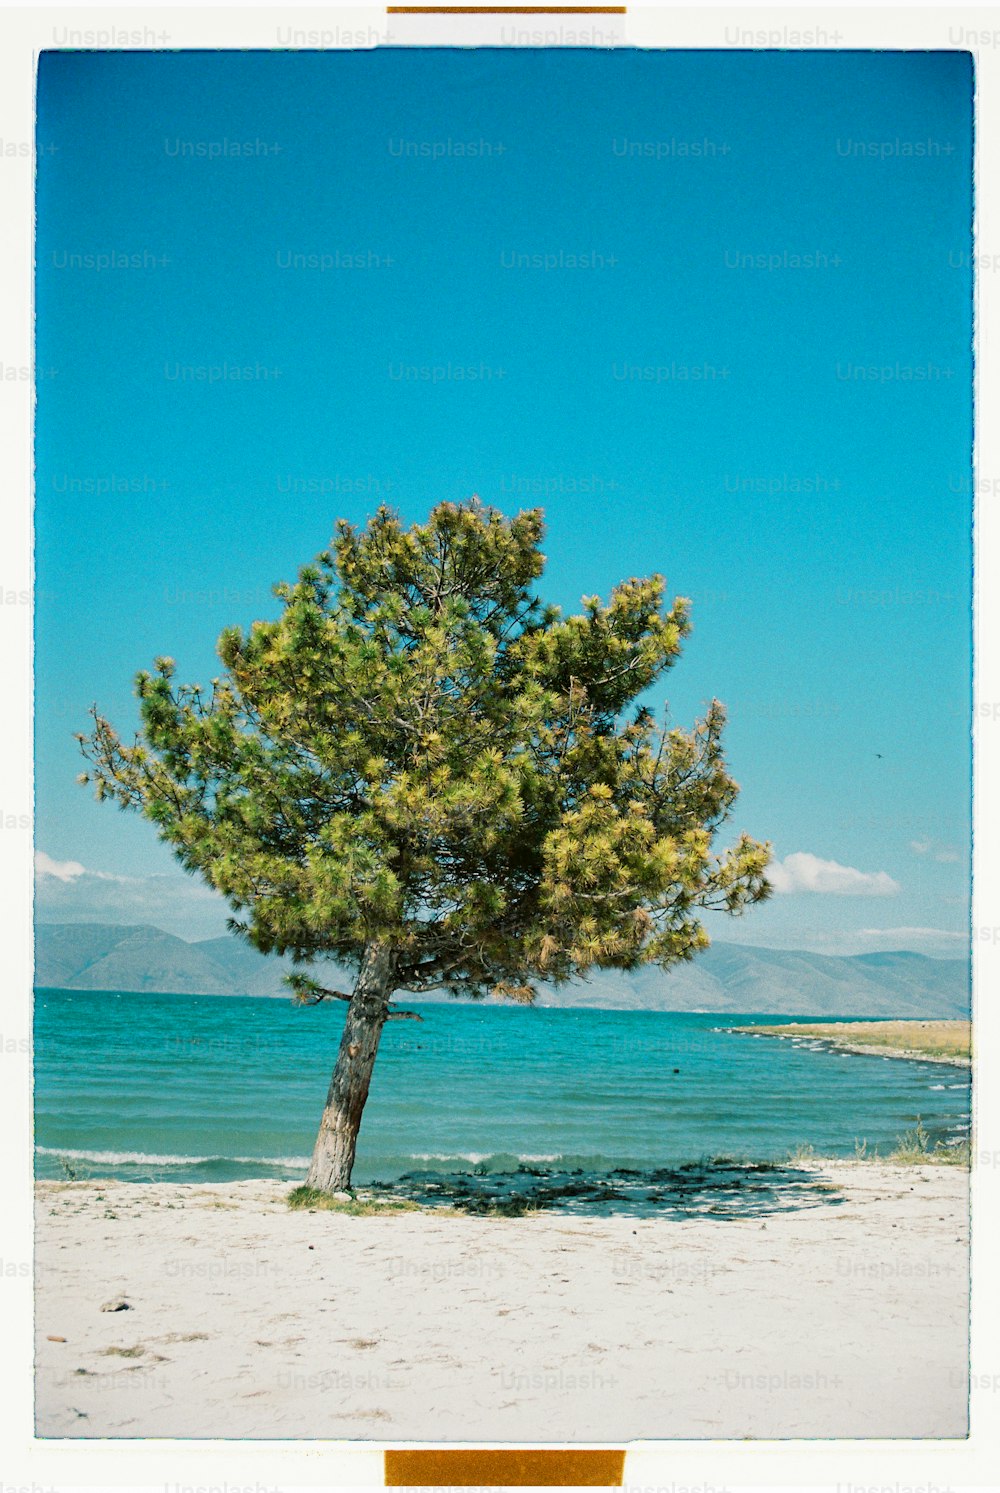 Un árbol solitario en una playa con el océano de fondo